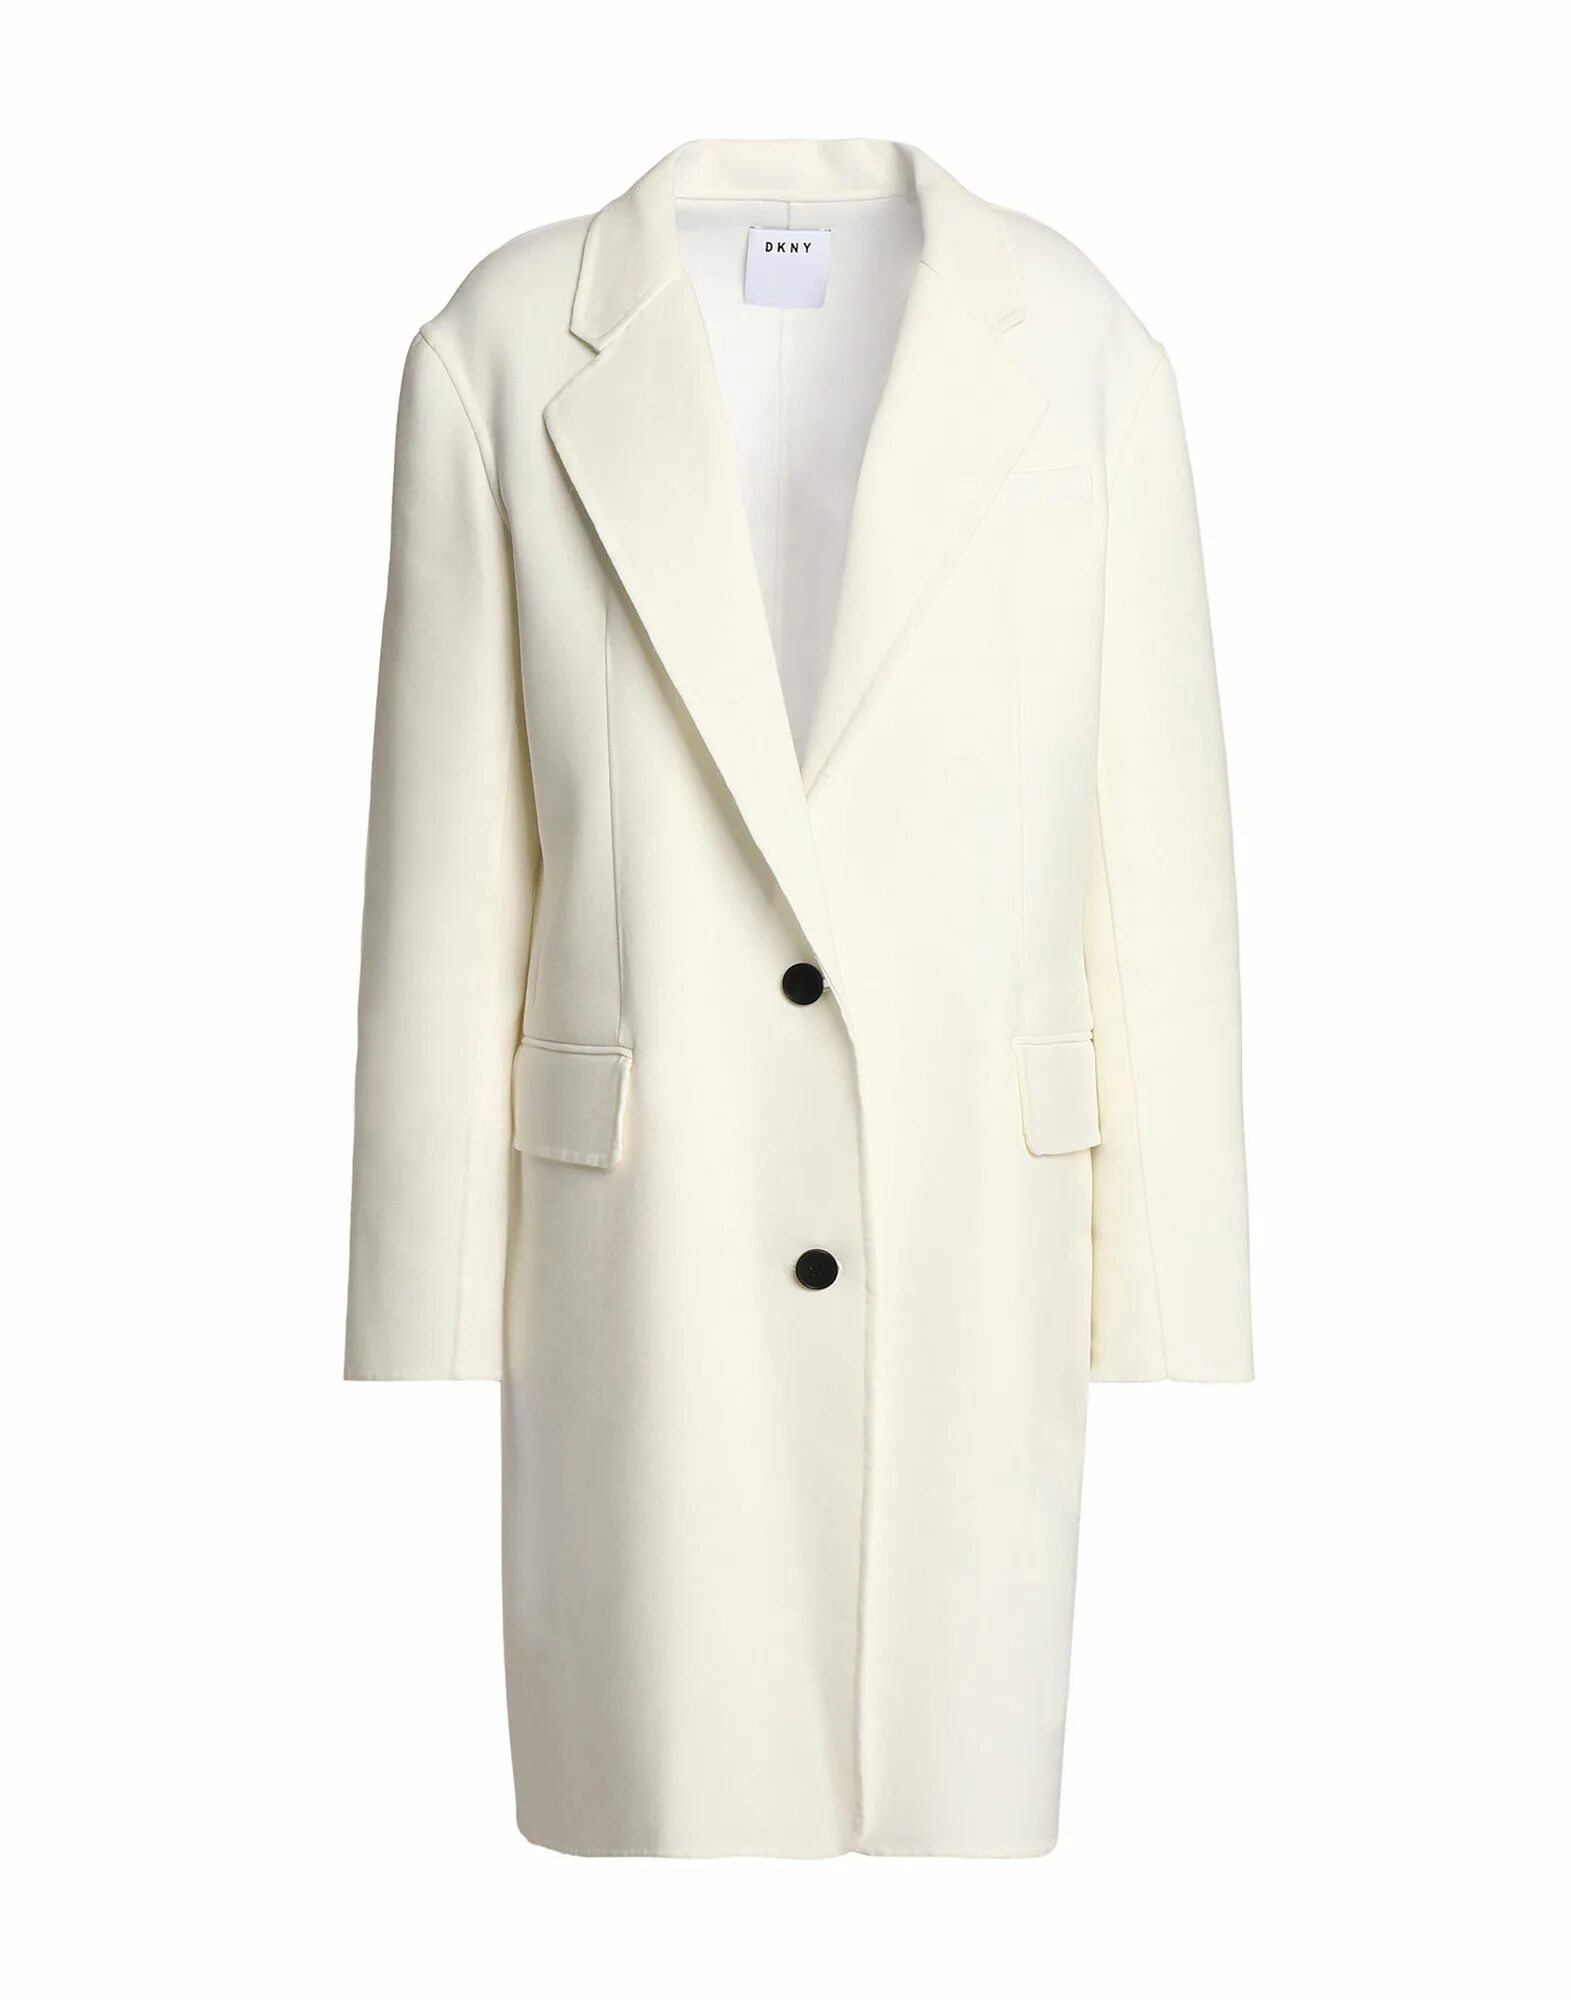 Купить легкое пальто. Пальто DKNY DL 740147. Пальто DKNY. DKNY пальто женское. DKNY женское пальто 1989.